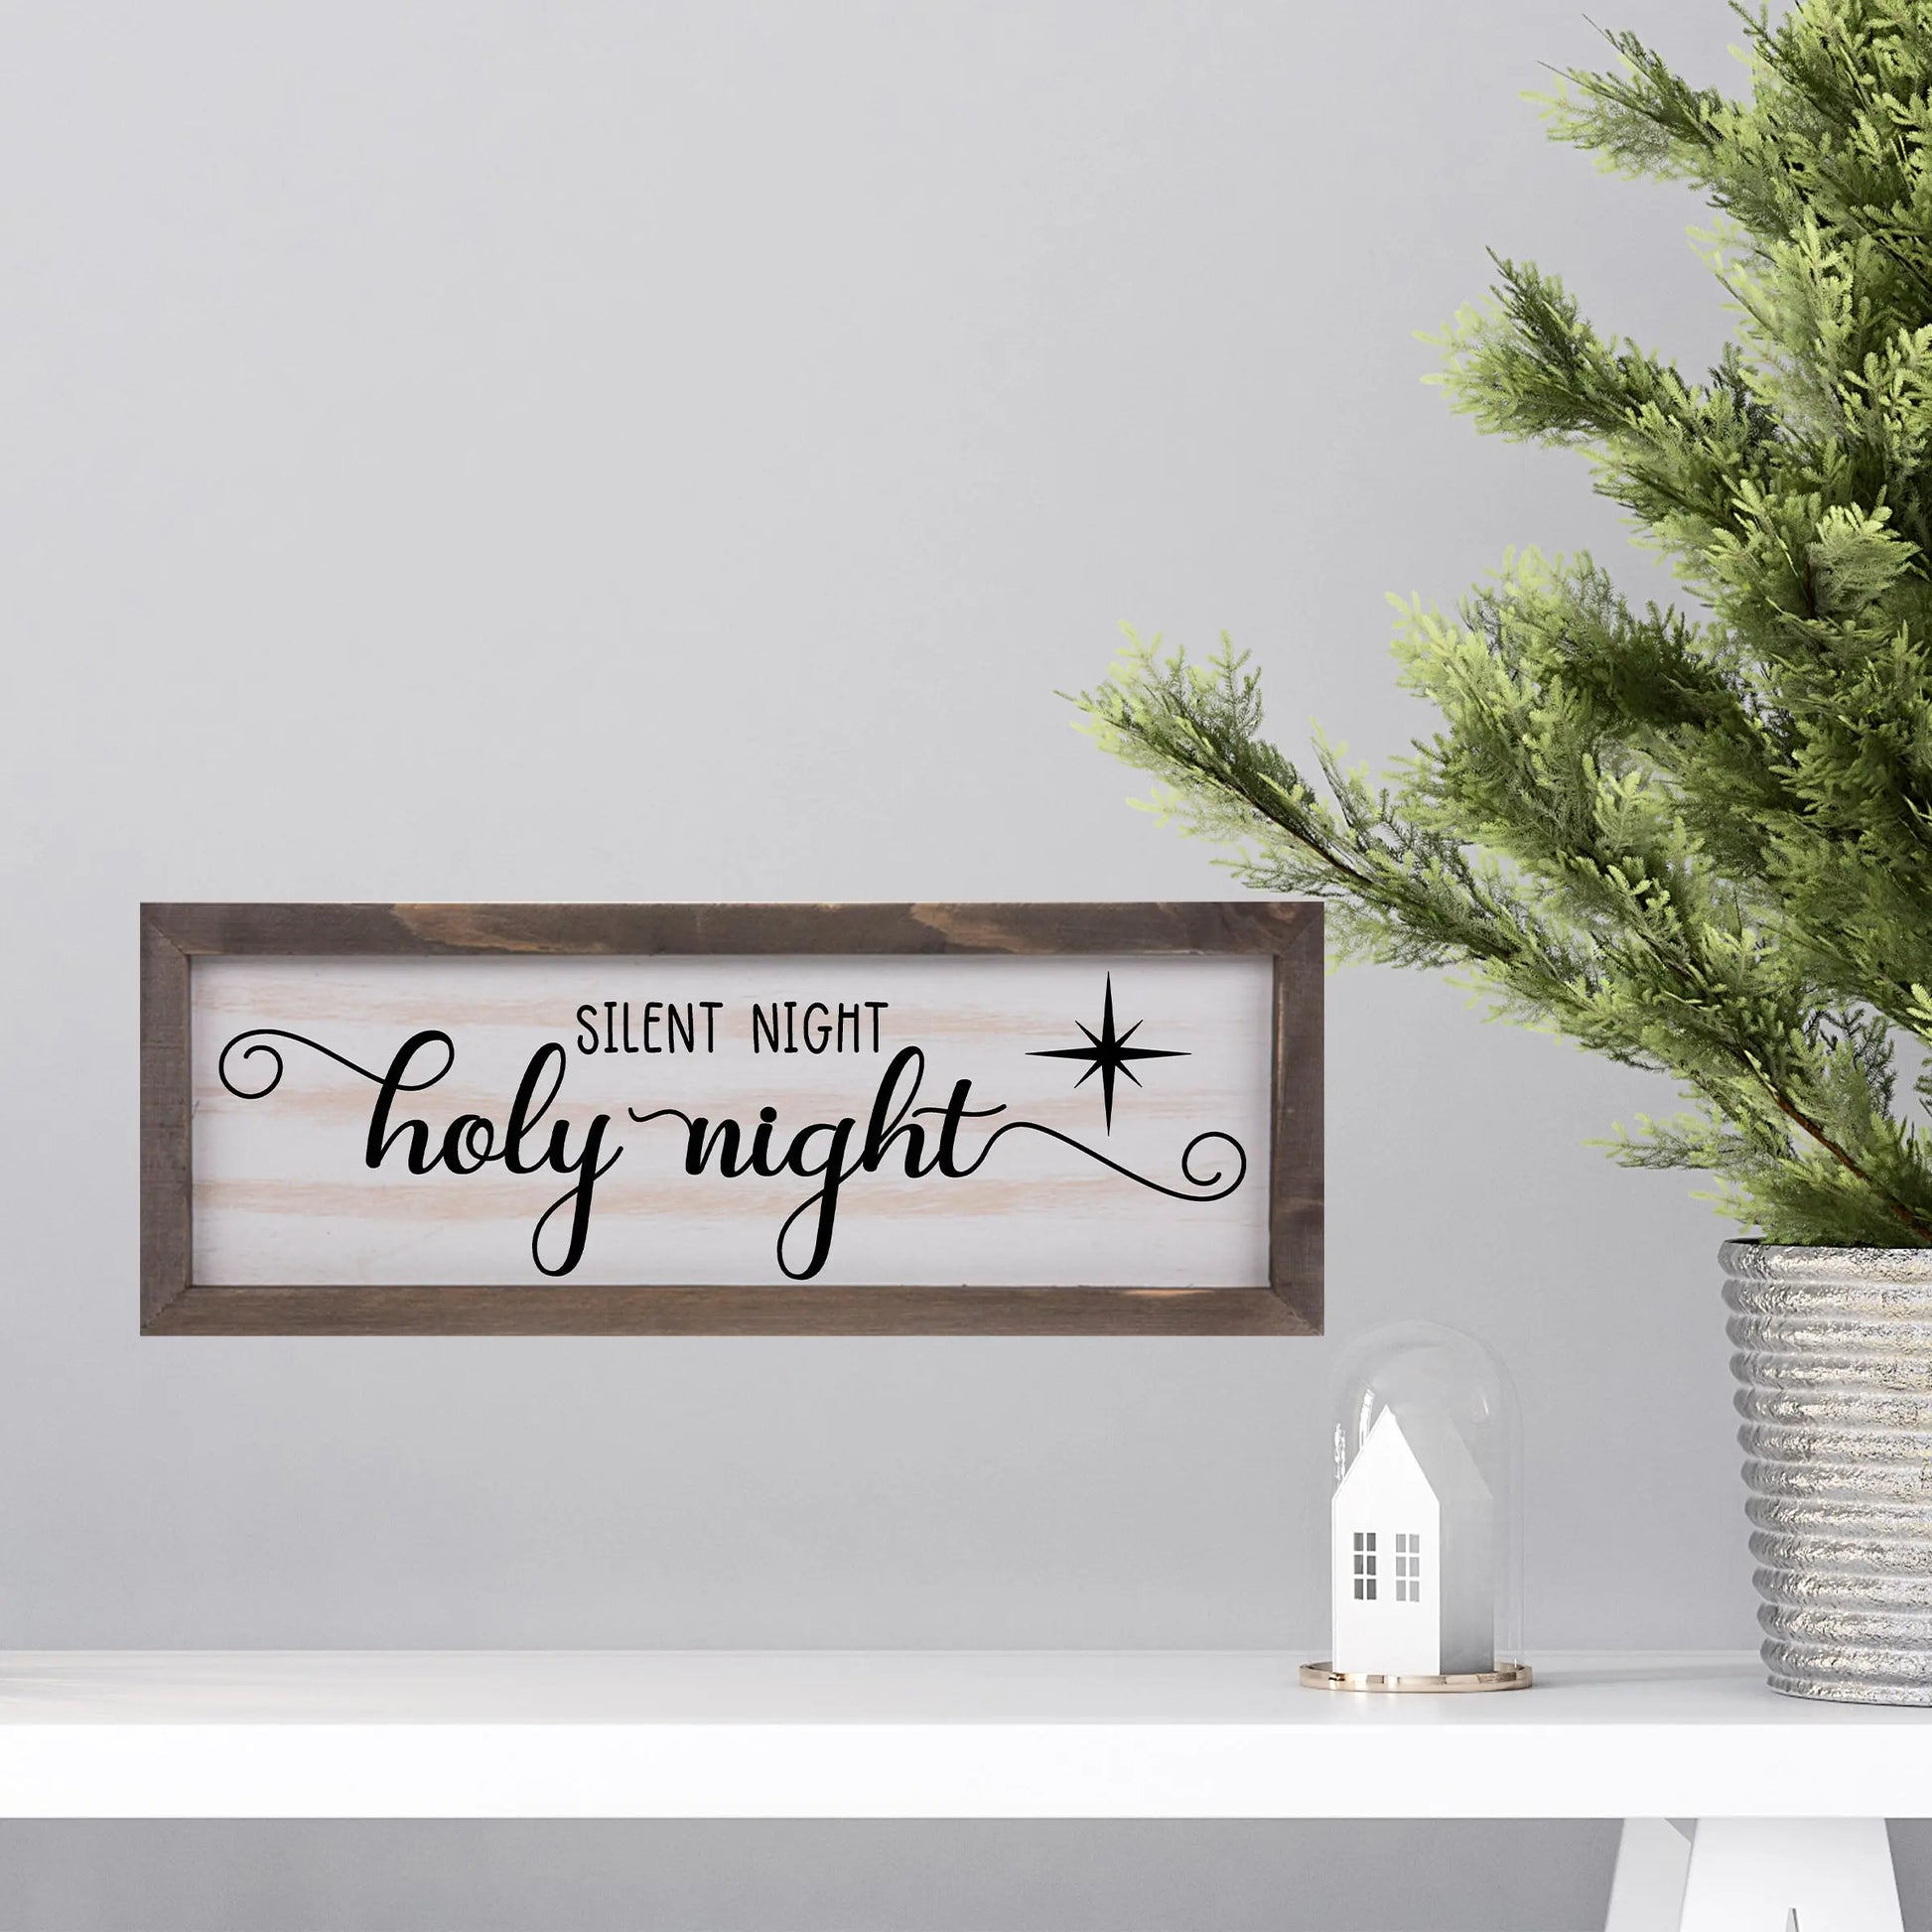 Silent Night Rustic Whitewashed Wood Frame Sign | 5.5" x 15" Farmhouse Decor | Christmas Wood Decor amazingfaithdesigns